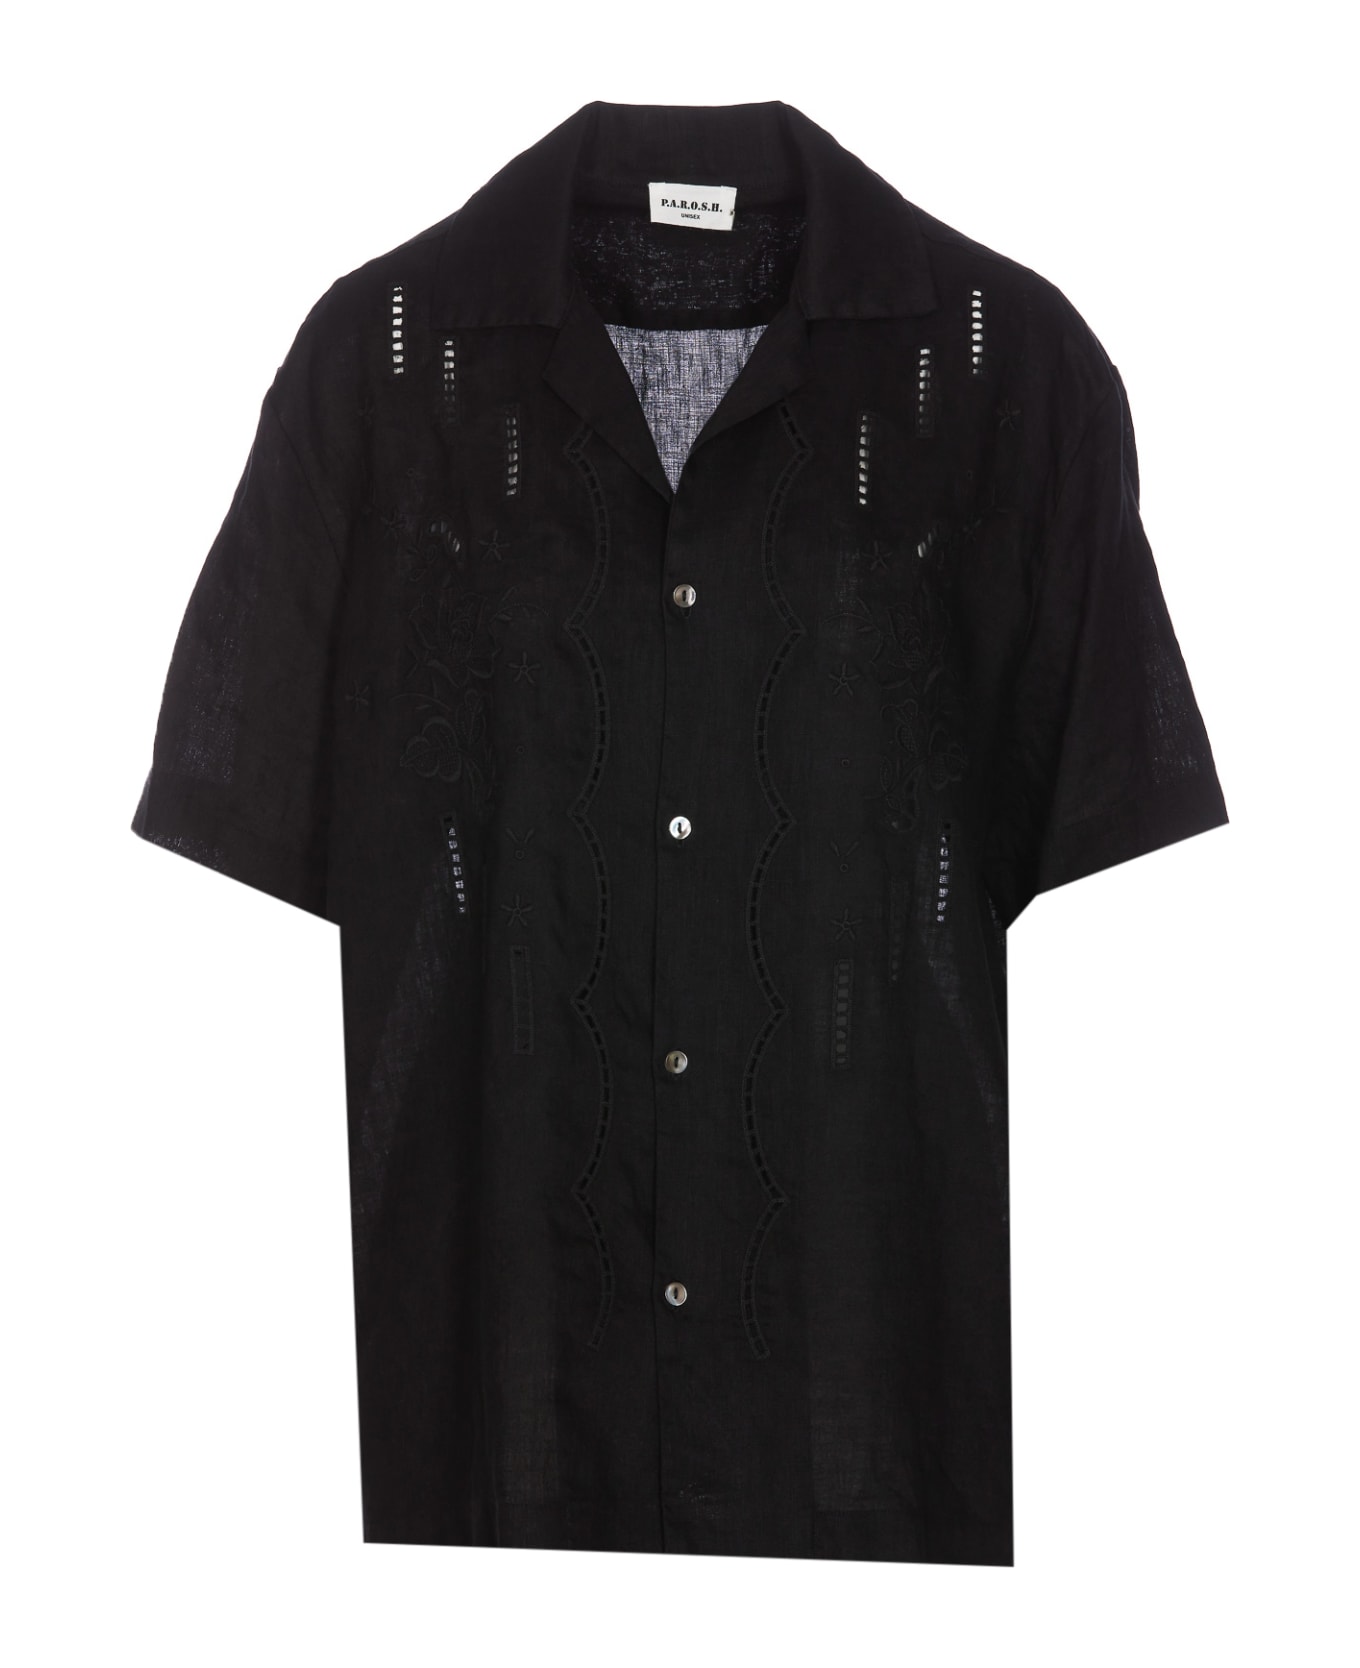 Parosh Beach Shirt - Black シャツ